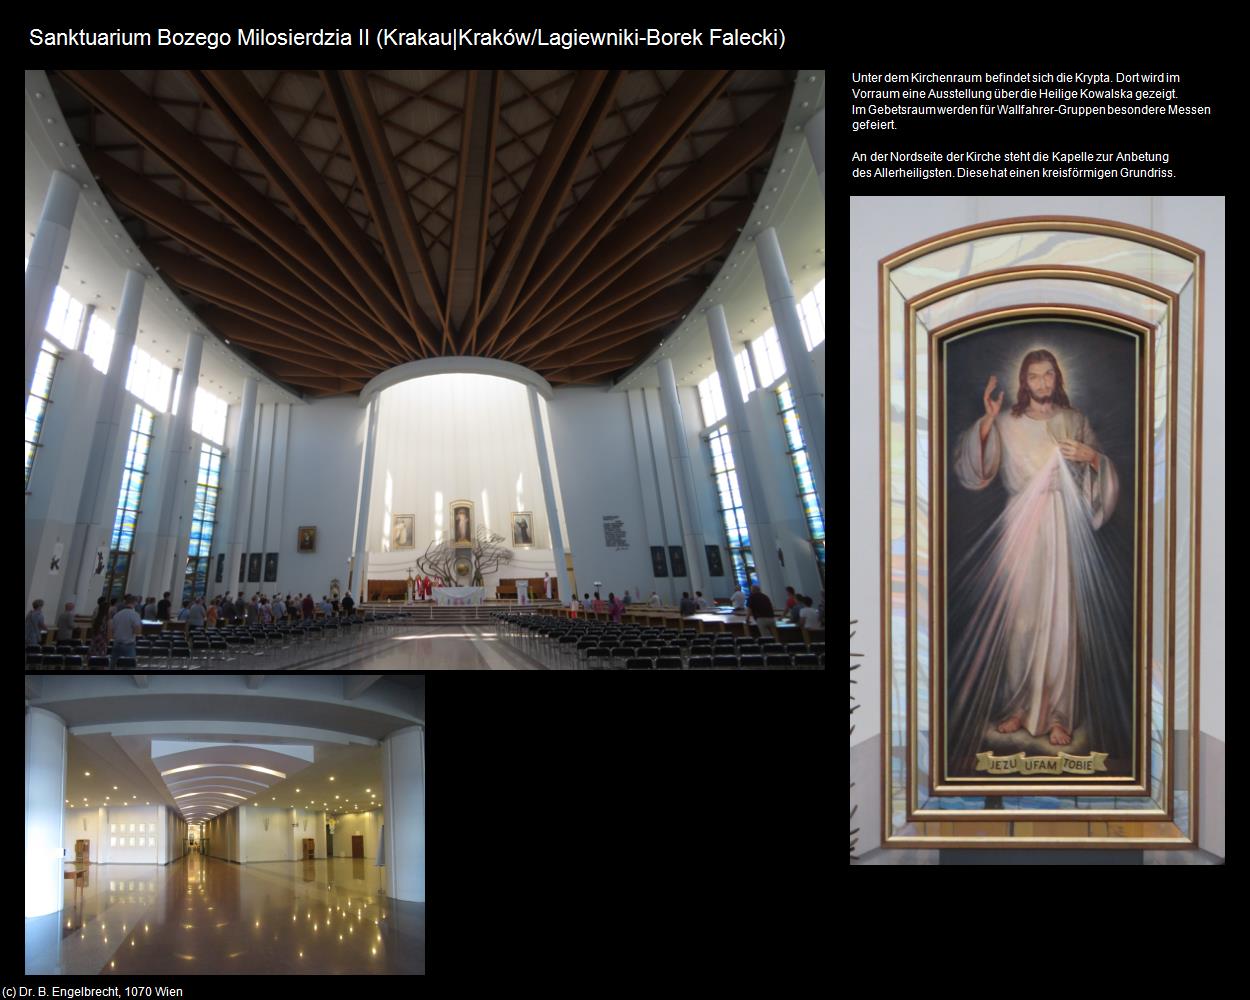 Sanktuarium Bozego Milosierdzia II (Lagiewniki-Borek Falecki) (Krakau|Krakow) in POLEN-Galizien